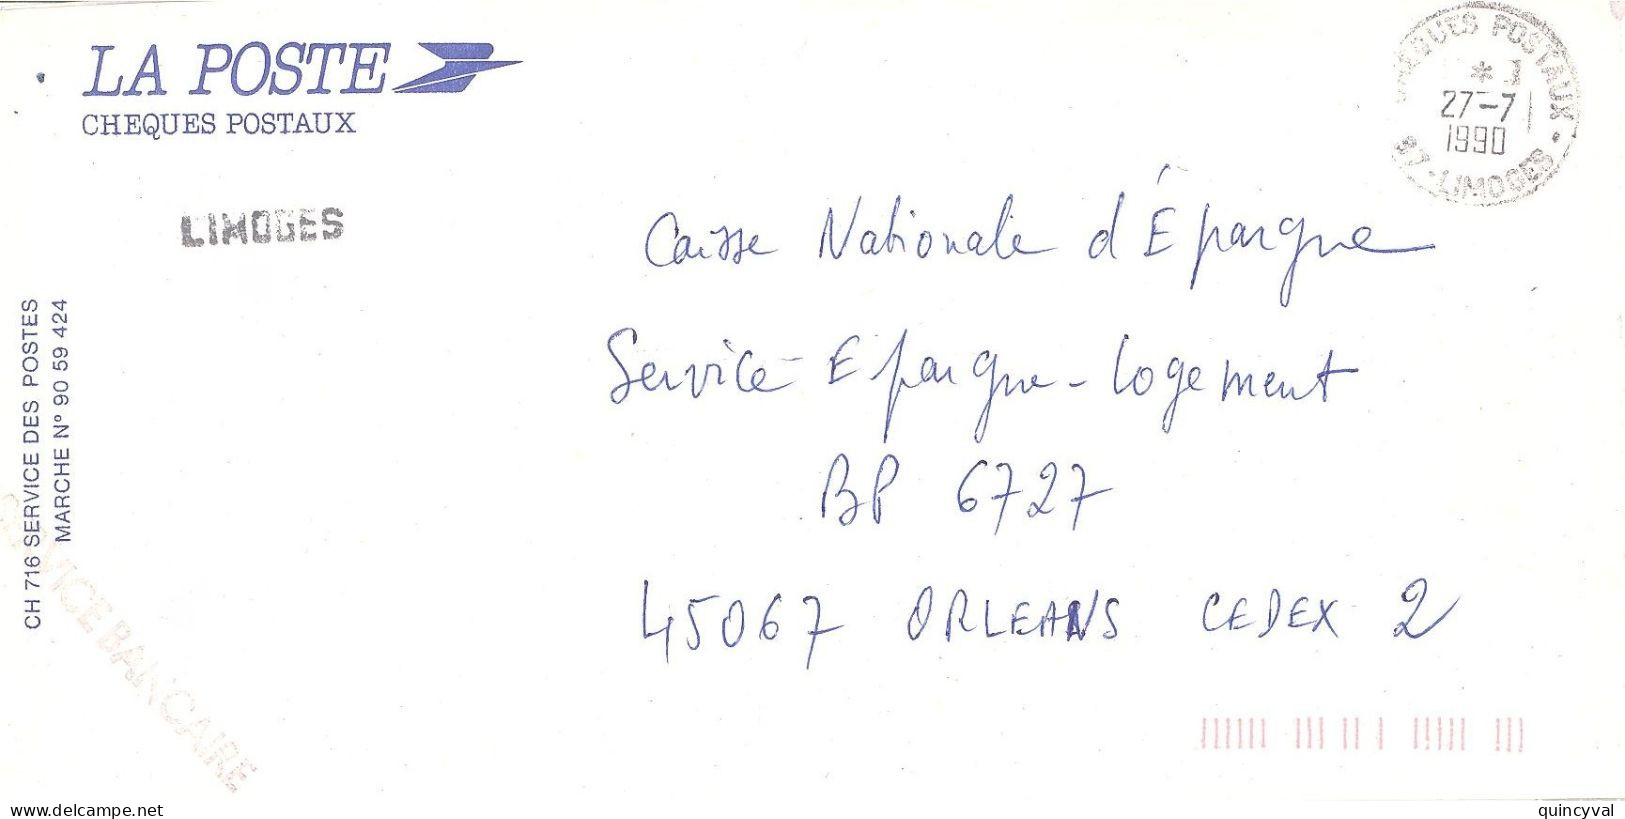 CHEQUES POSTAUX  87 LIMOGES Ob 27 7  1990 Lettre Enveloppe CCP Chèques Postaux  Service BANCAIRE - Handstempels